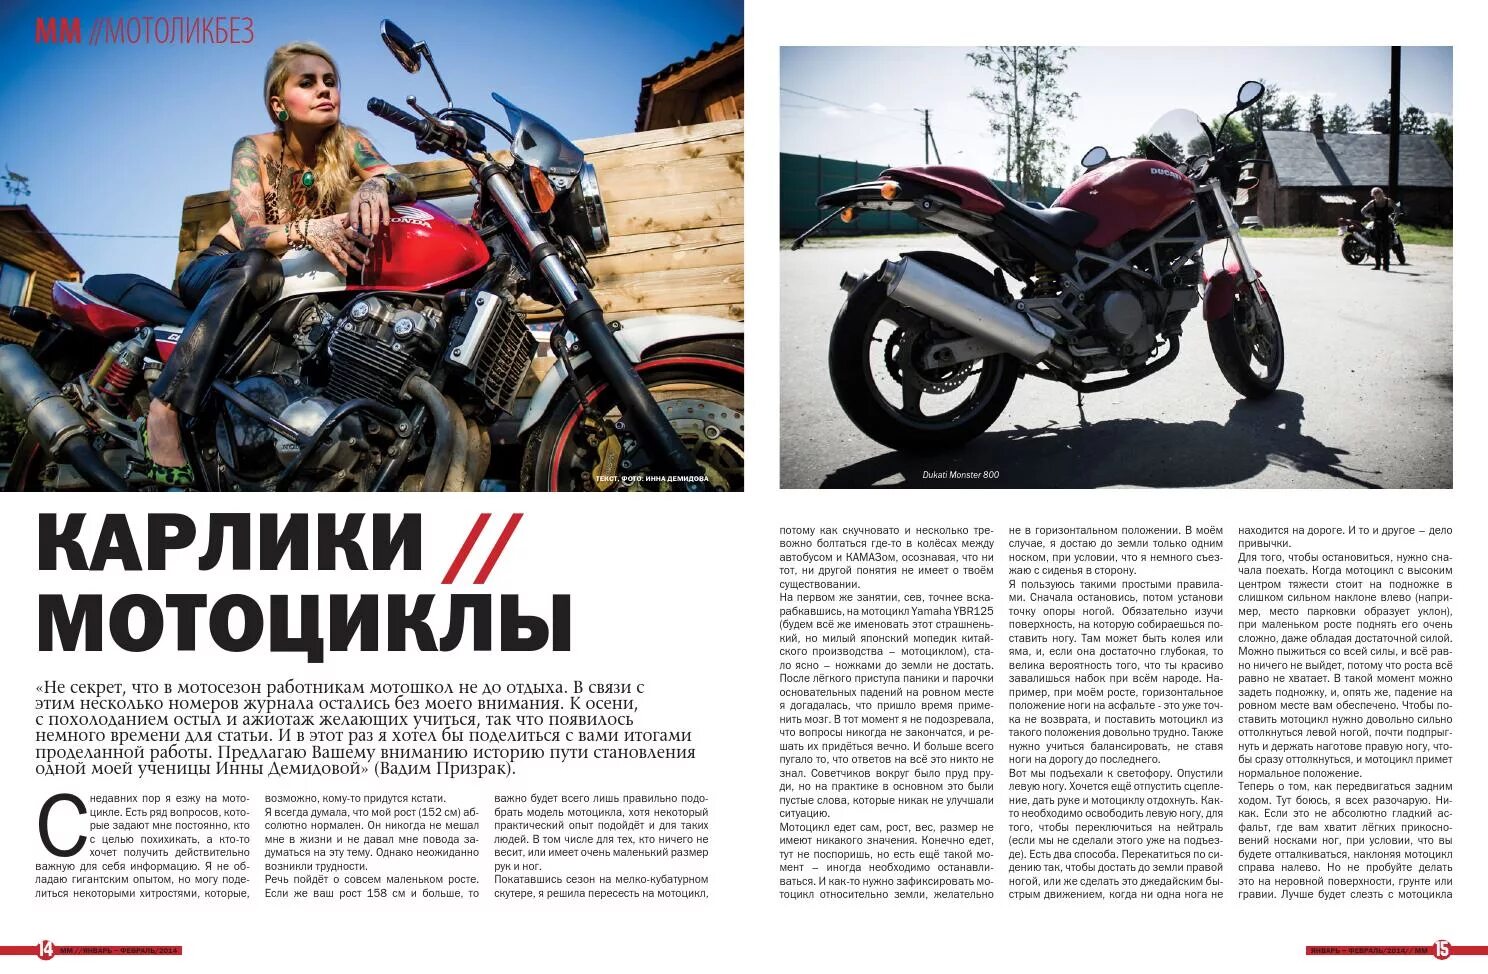 Где поставить мотоцикл. Мотоцикл секрет. Мото модели журнал. Мотомания. Карлик на мотоцикле.